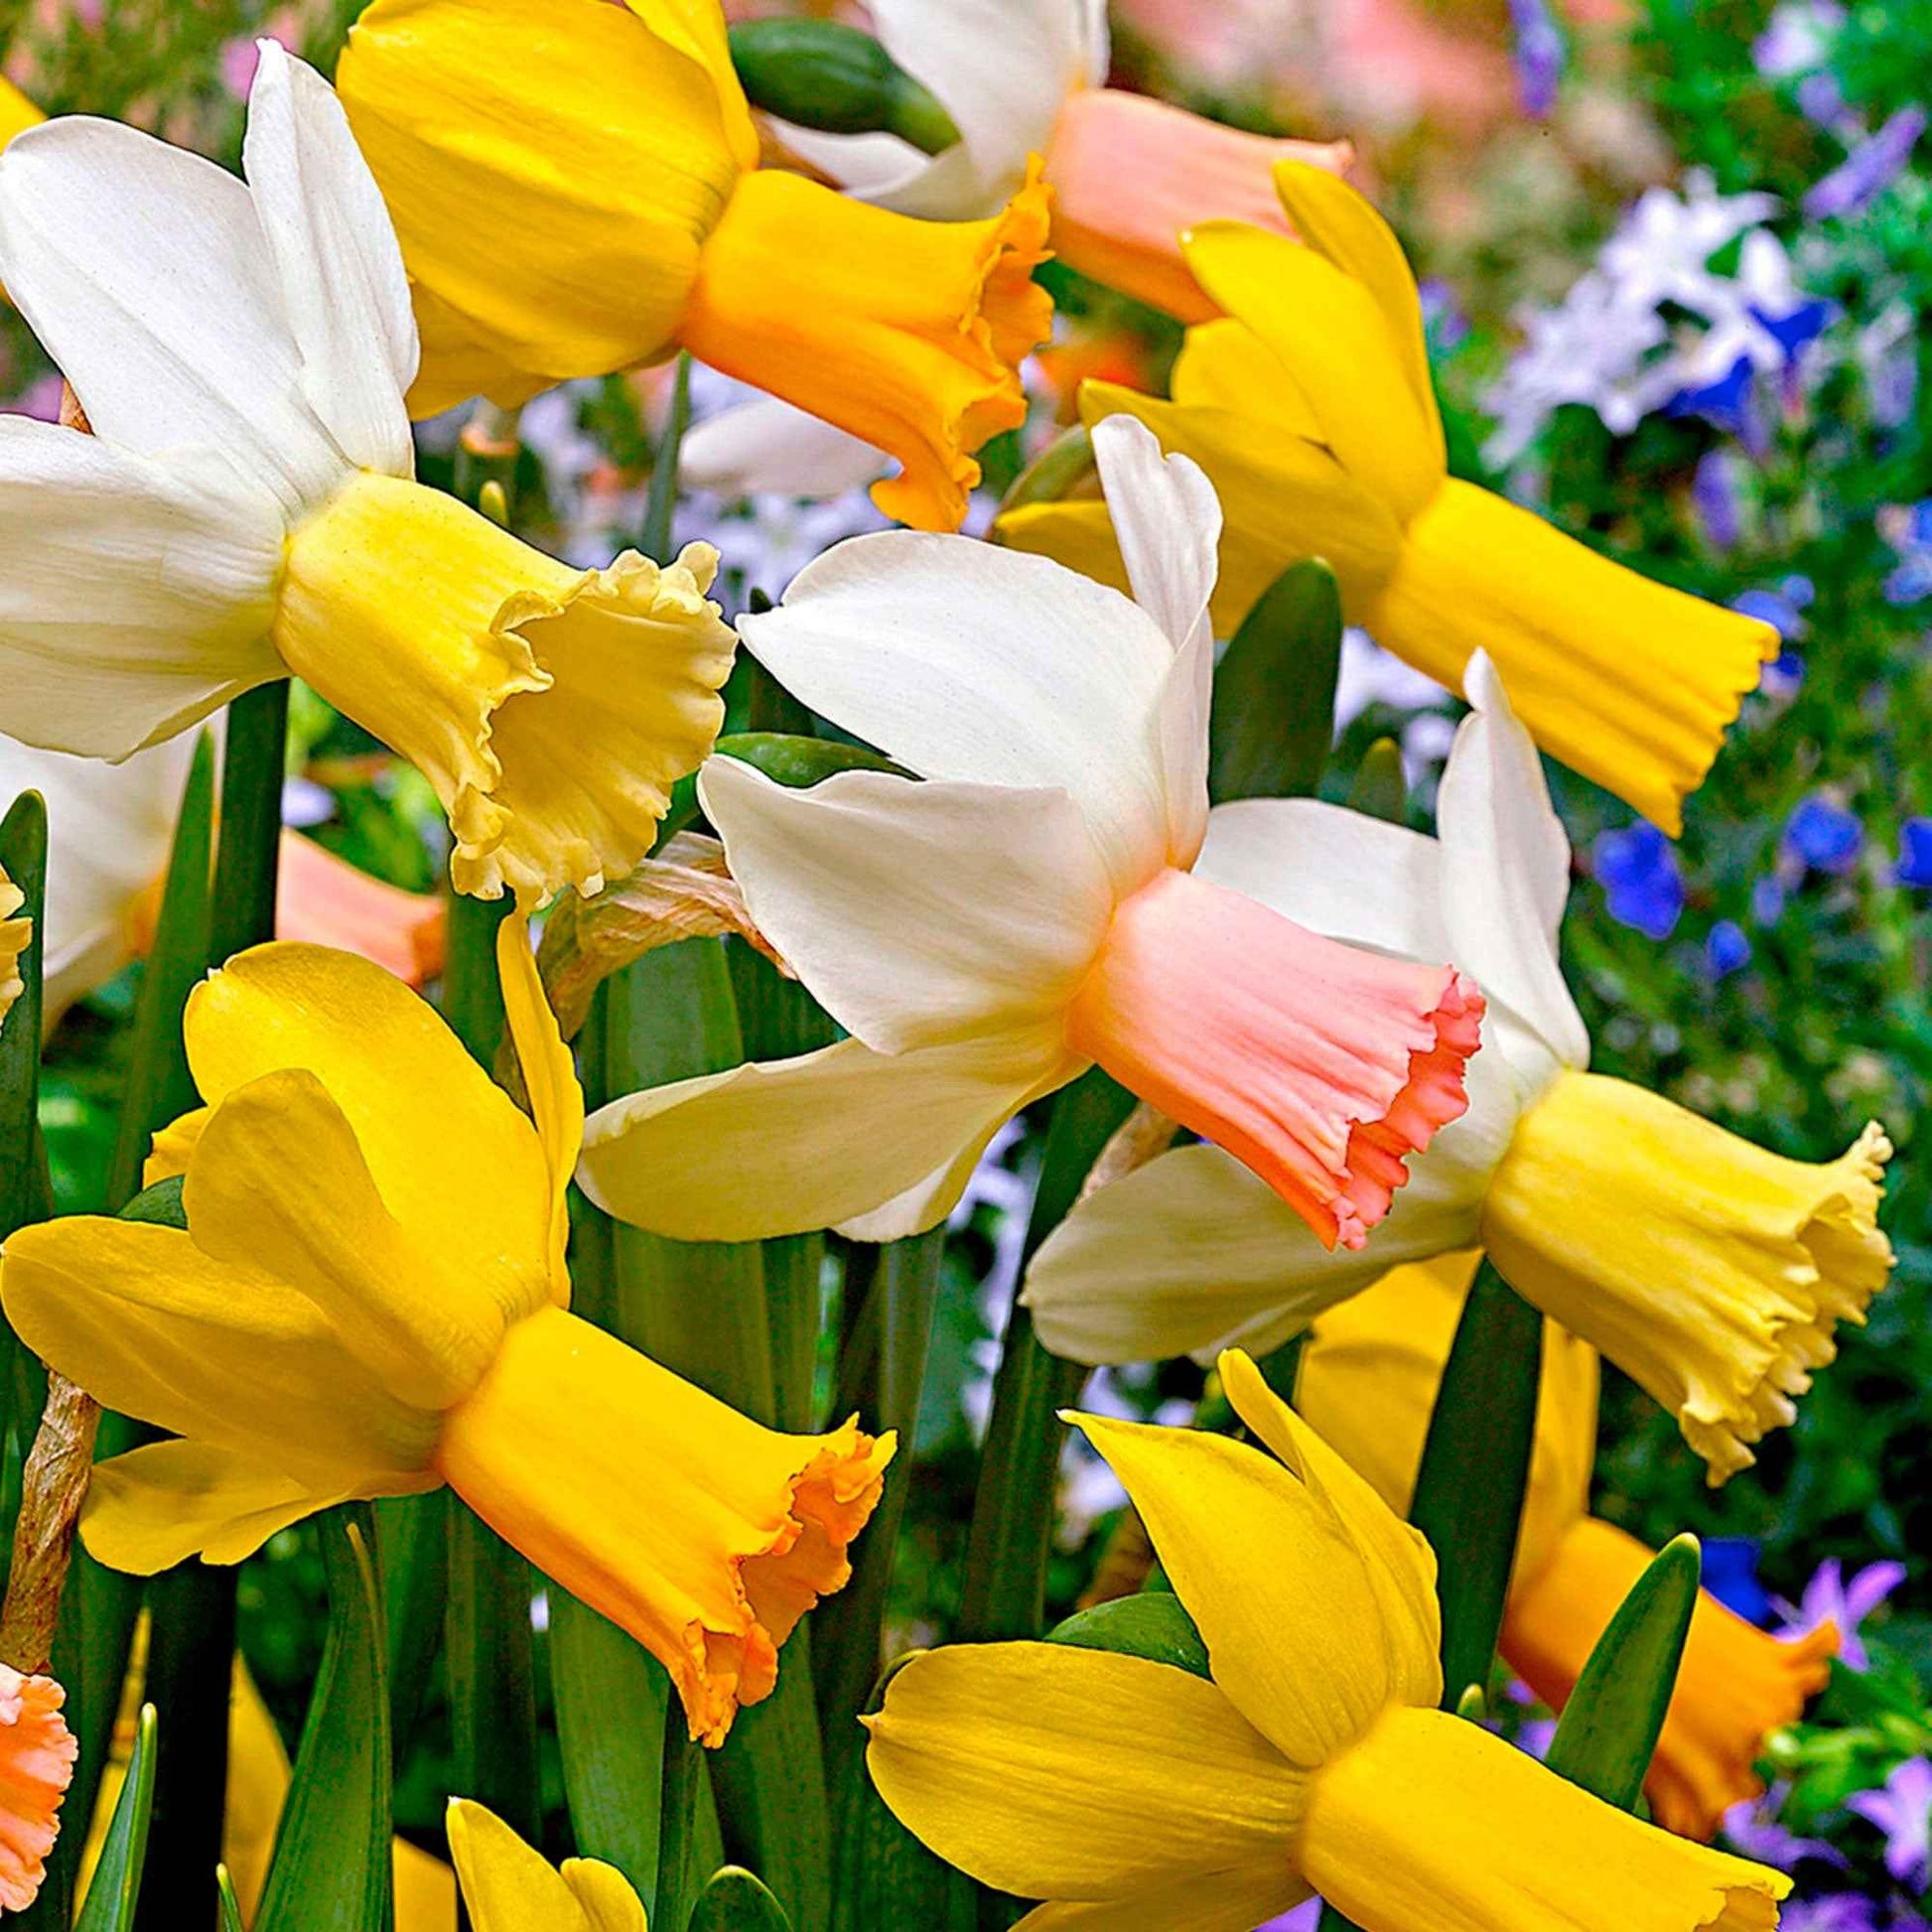 25x Narzisse Narcissus - Mischung 'Dwarf' biologisch gelb-weiβ - Alle beliebten Blumenzwiebeln